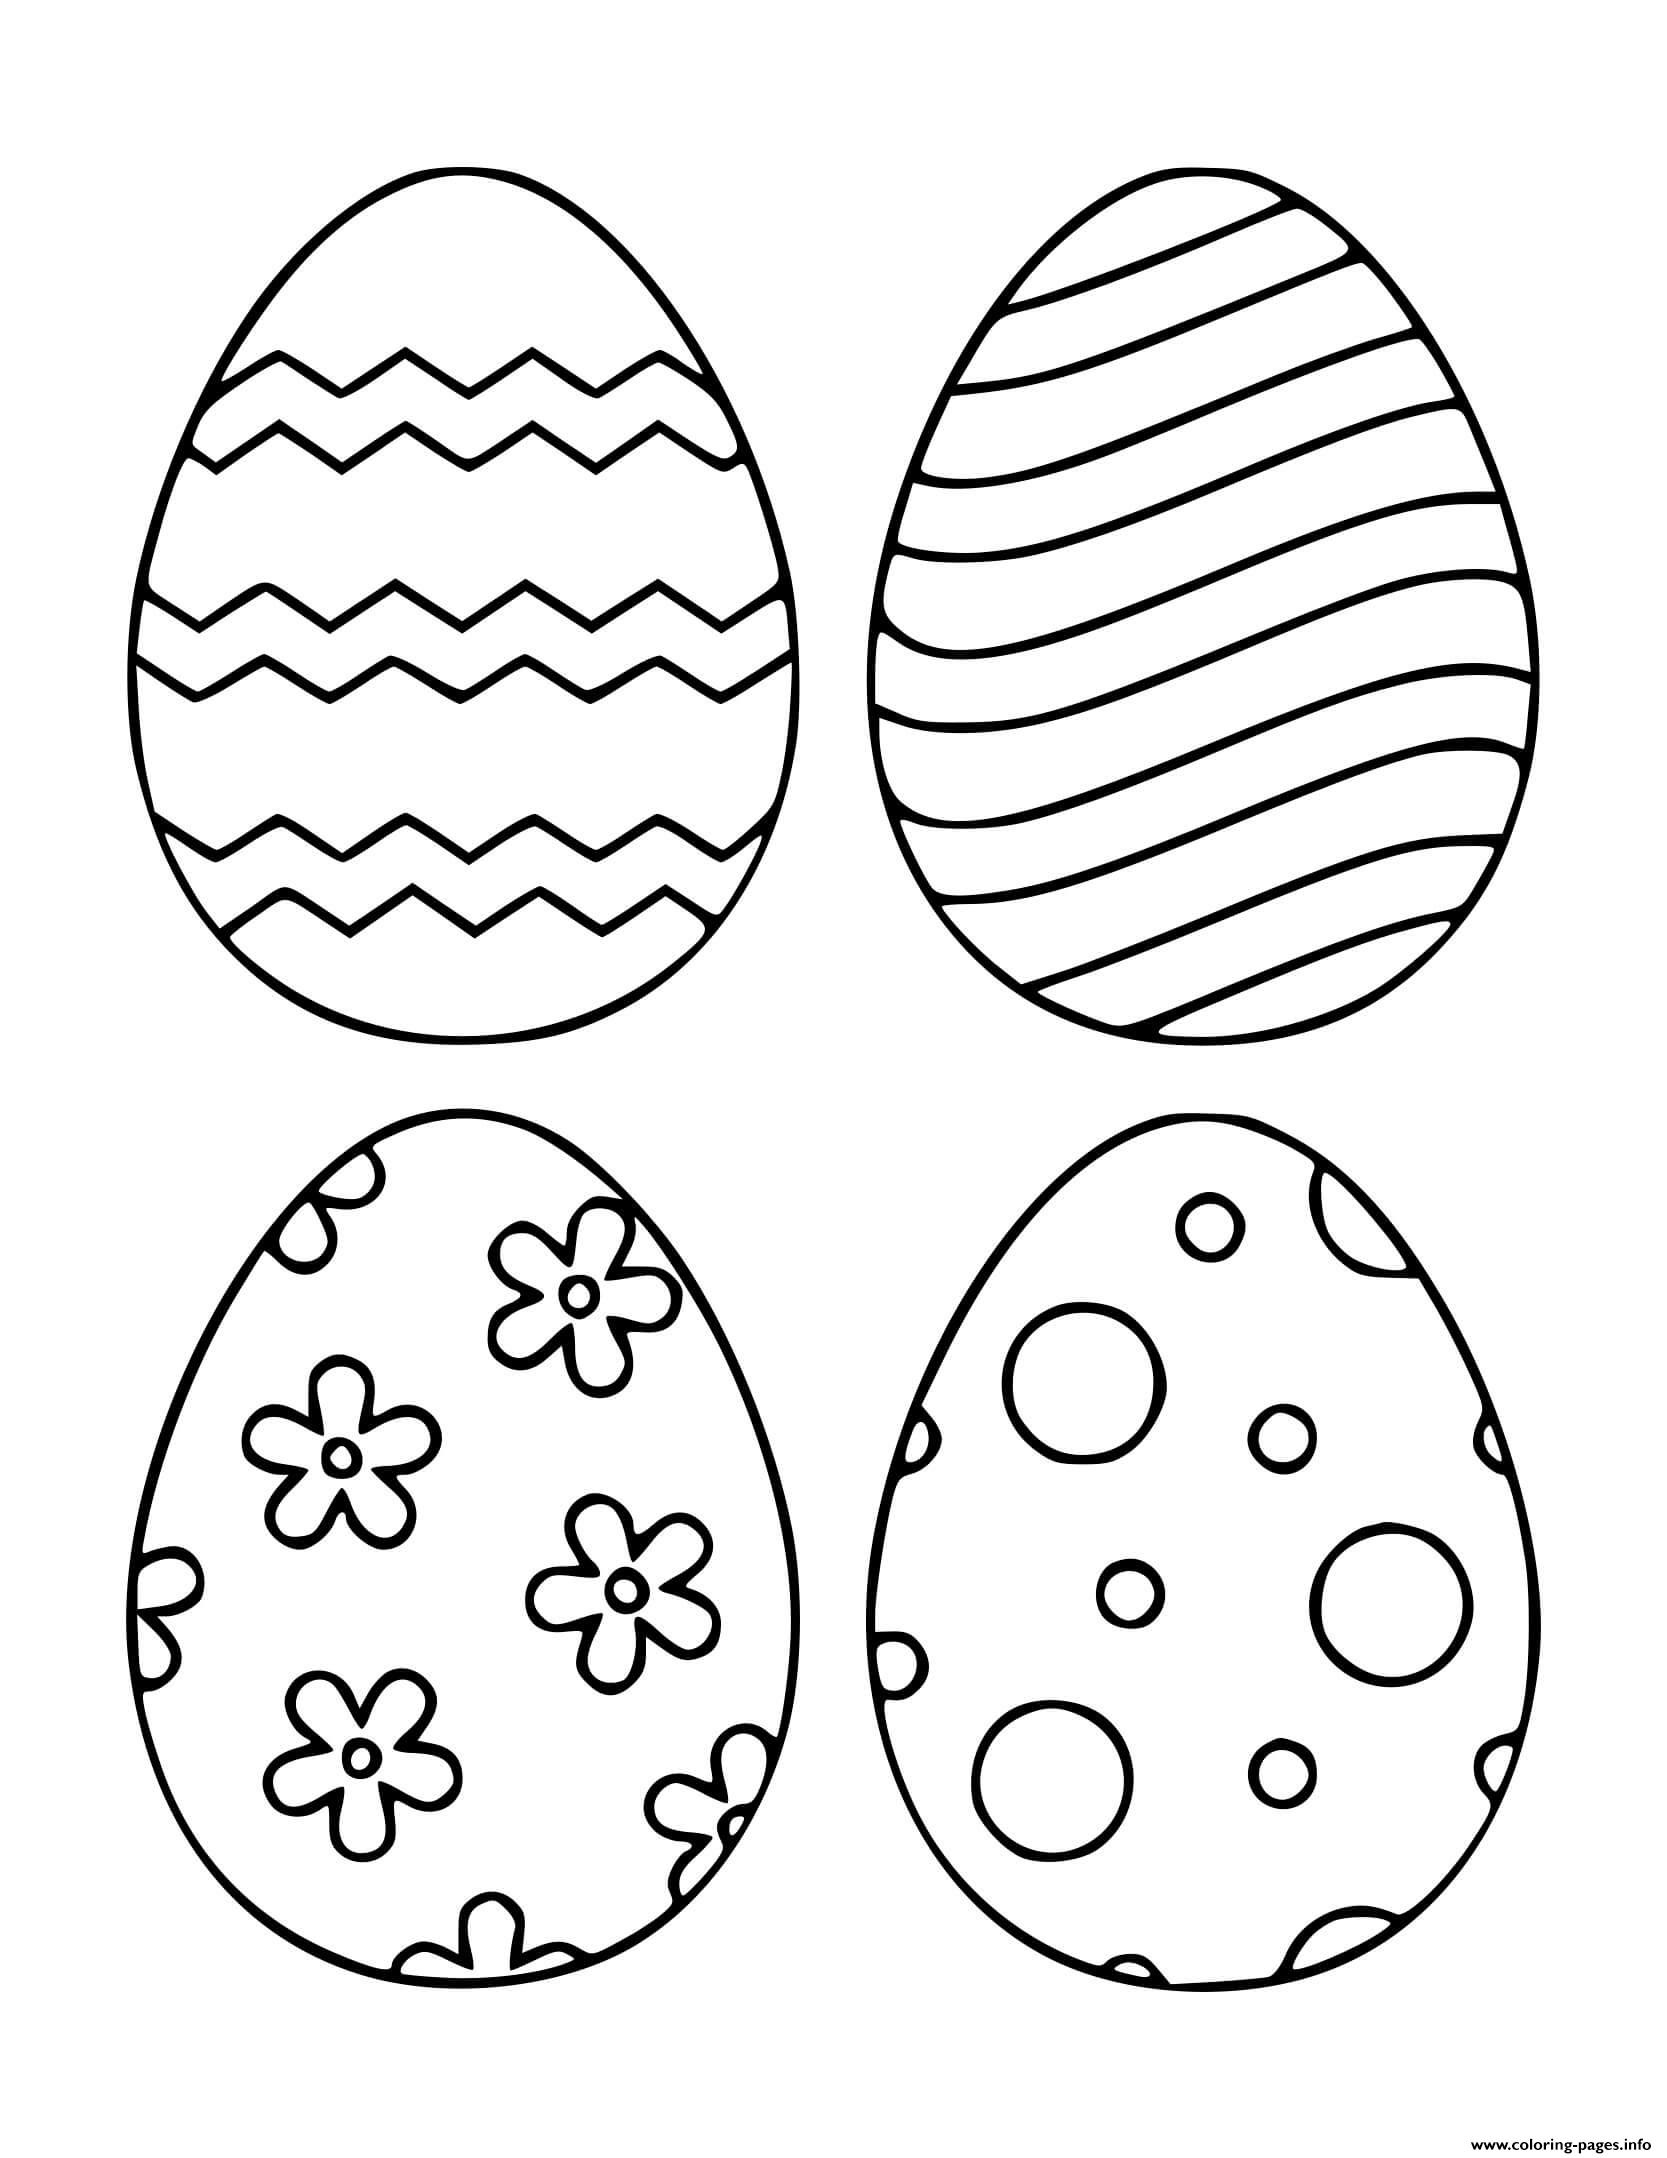 Пасхальное яйцо рисунок для детей. Пасхальное яйцо раскраска для детей. Яйца на Пасху раскраска. Раскраски пасхальные для детей. Раскраска Пасха для детей.